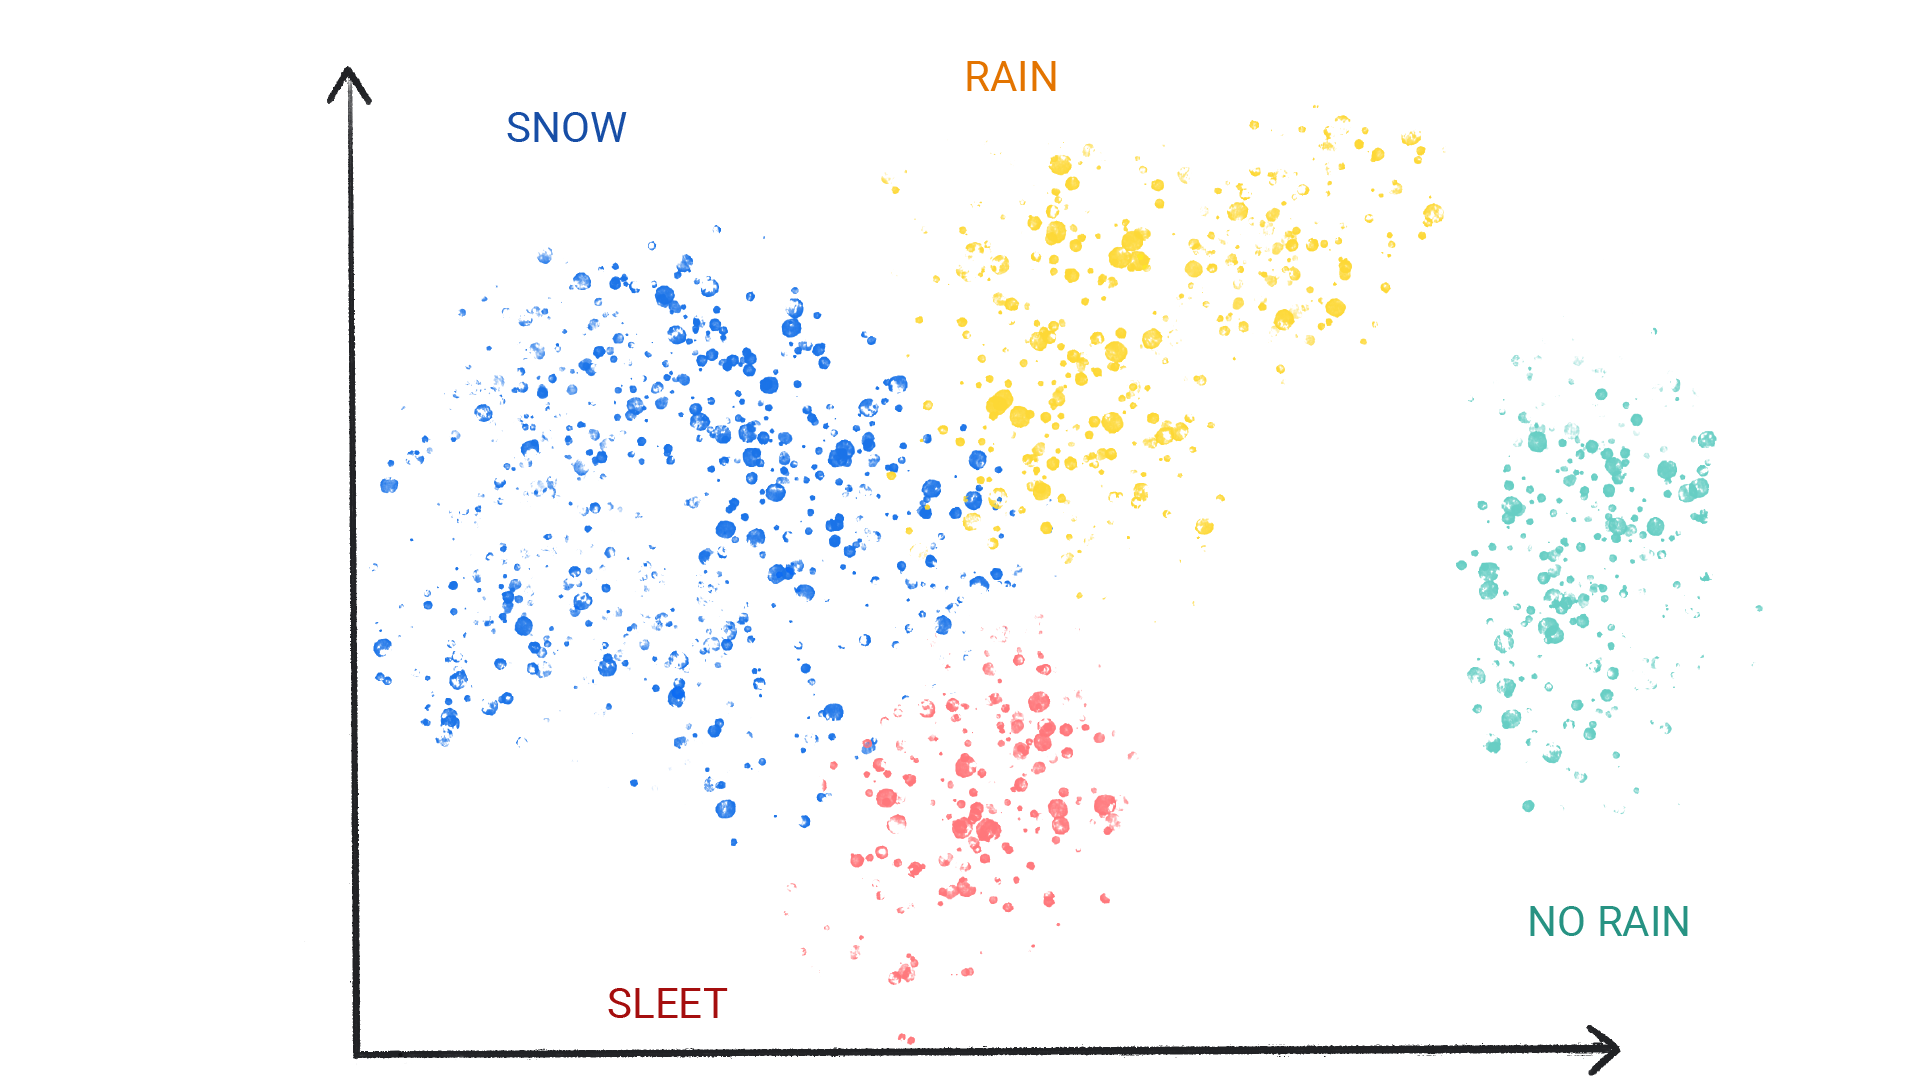 Uma imagem mostrando pontos coloridos em grupos rotulados como neve, chuva, granizo e sem chuva.